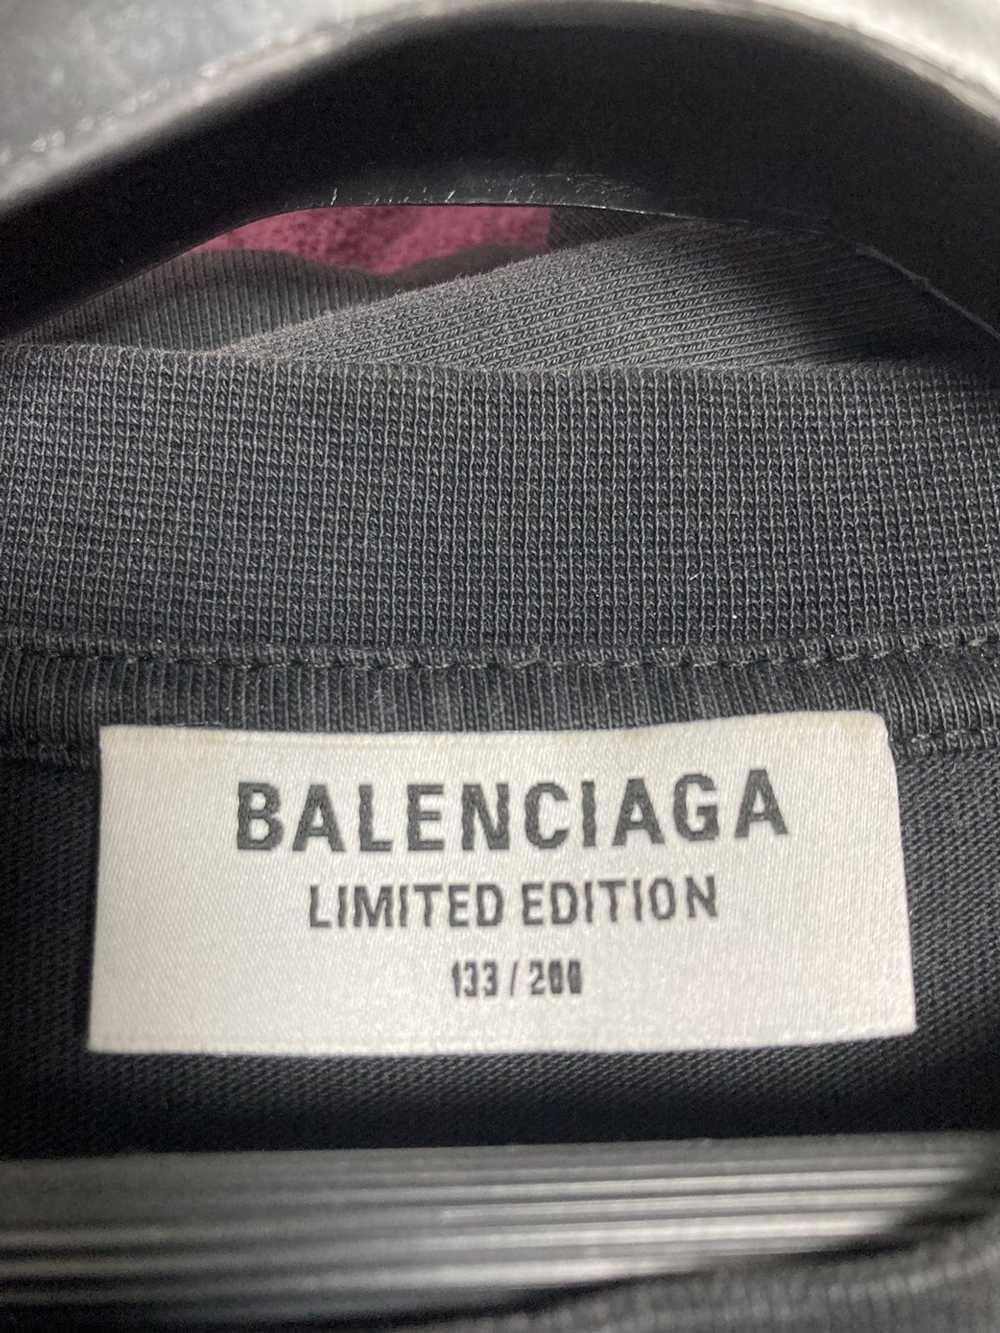 Balenciaga Balenciaga Ramstein limited edition Tee - image 3